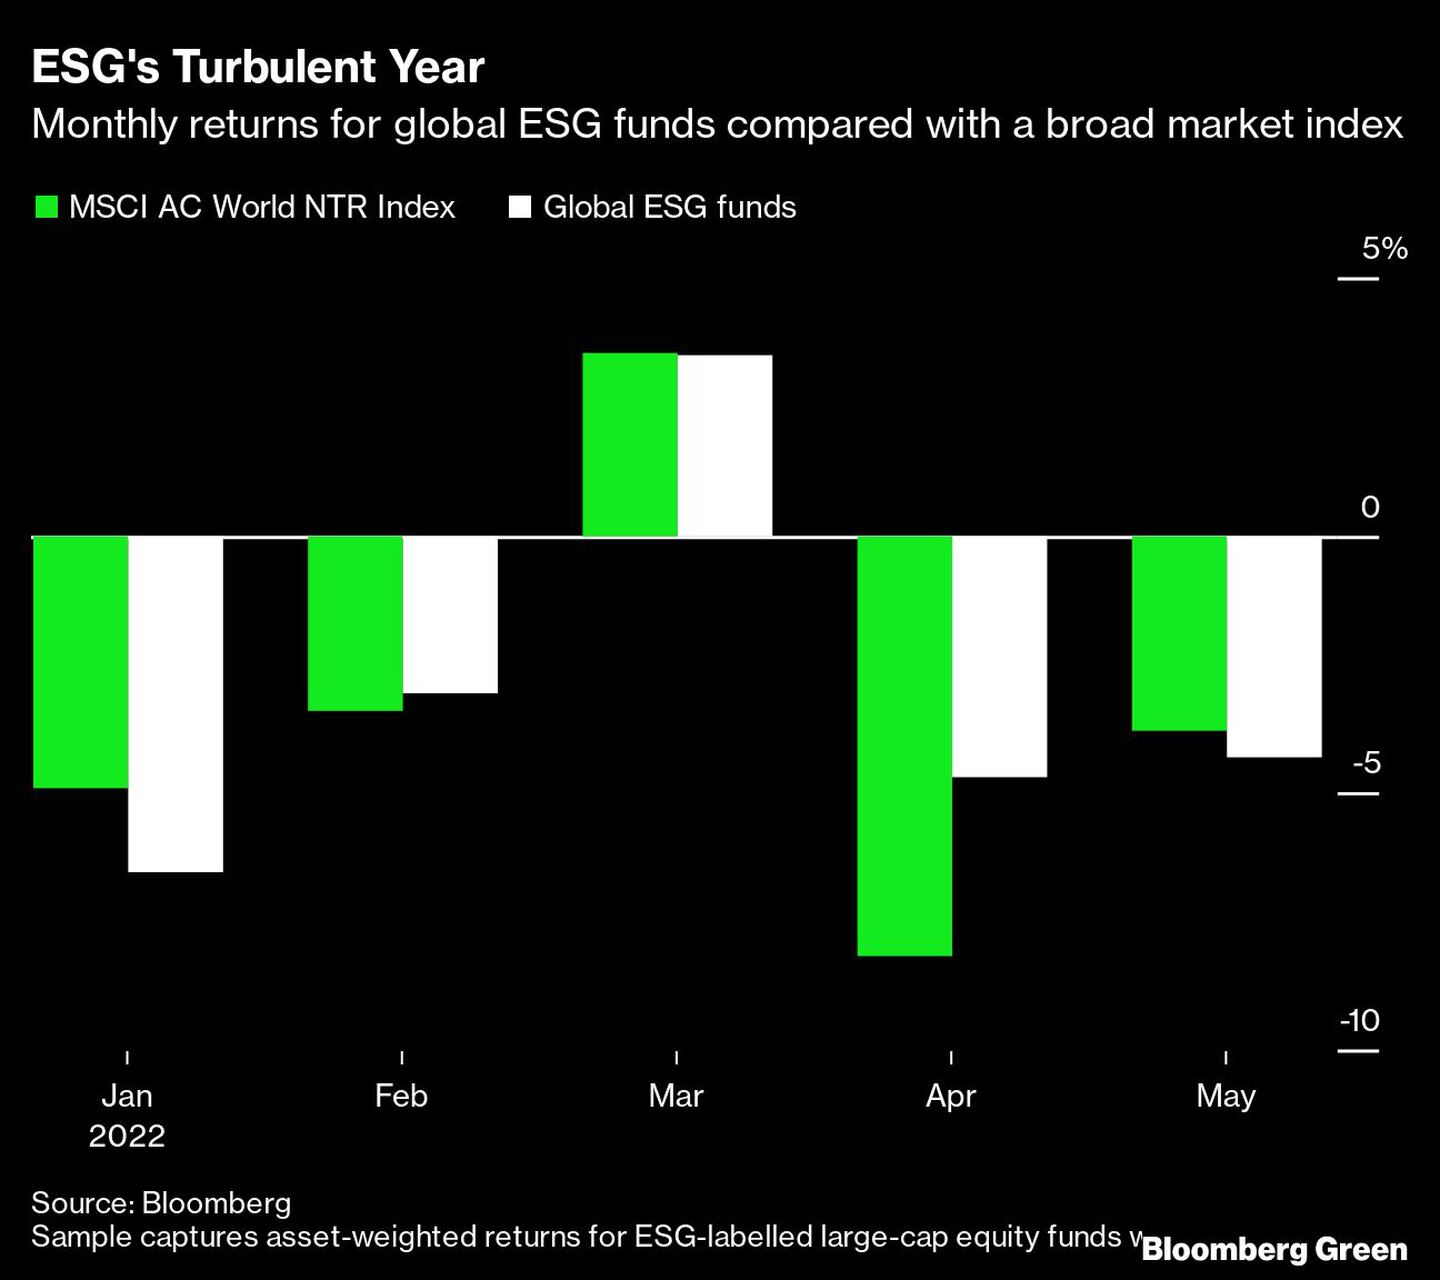 Rendimientos mensuales de los fondos globales de ESG comparados con un índice de mercado ampliodfd